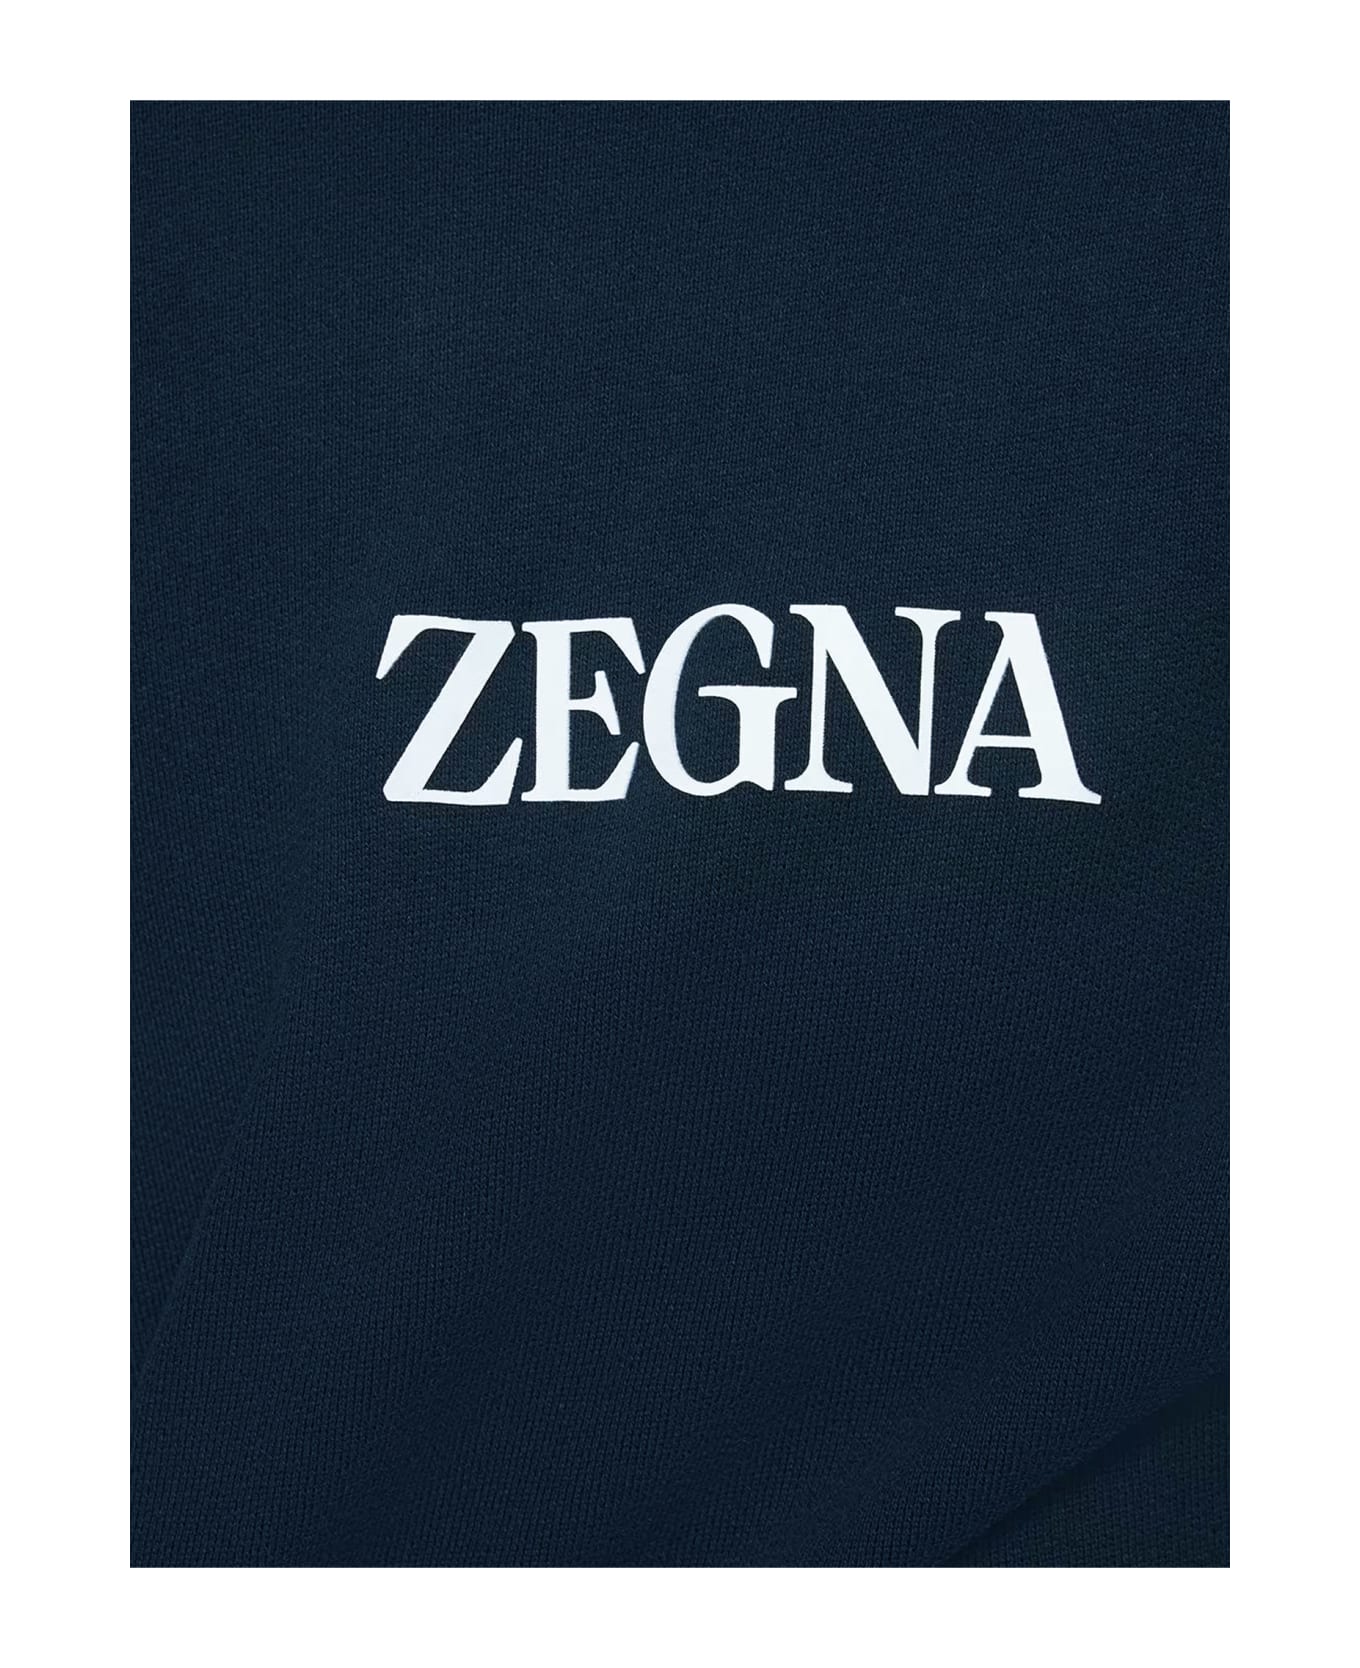 Zegna #usetheexisting Sweatshirt - NAVY